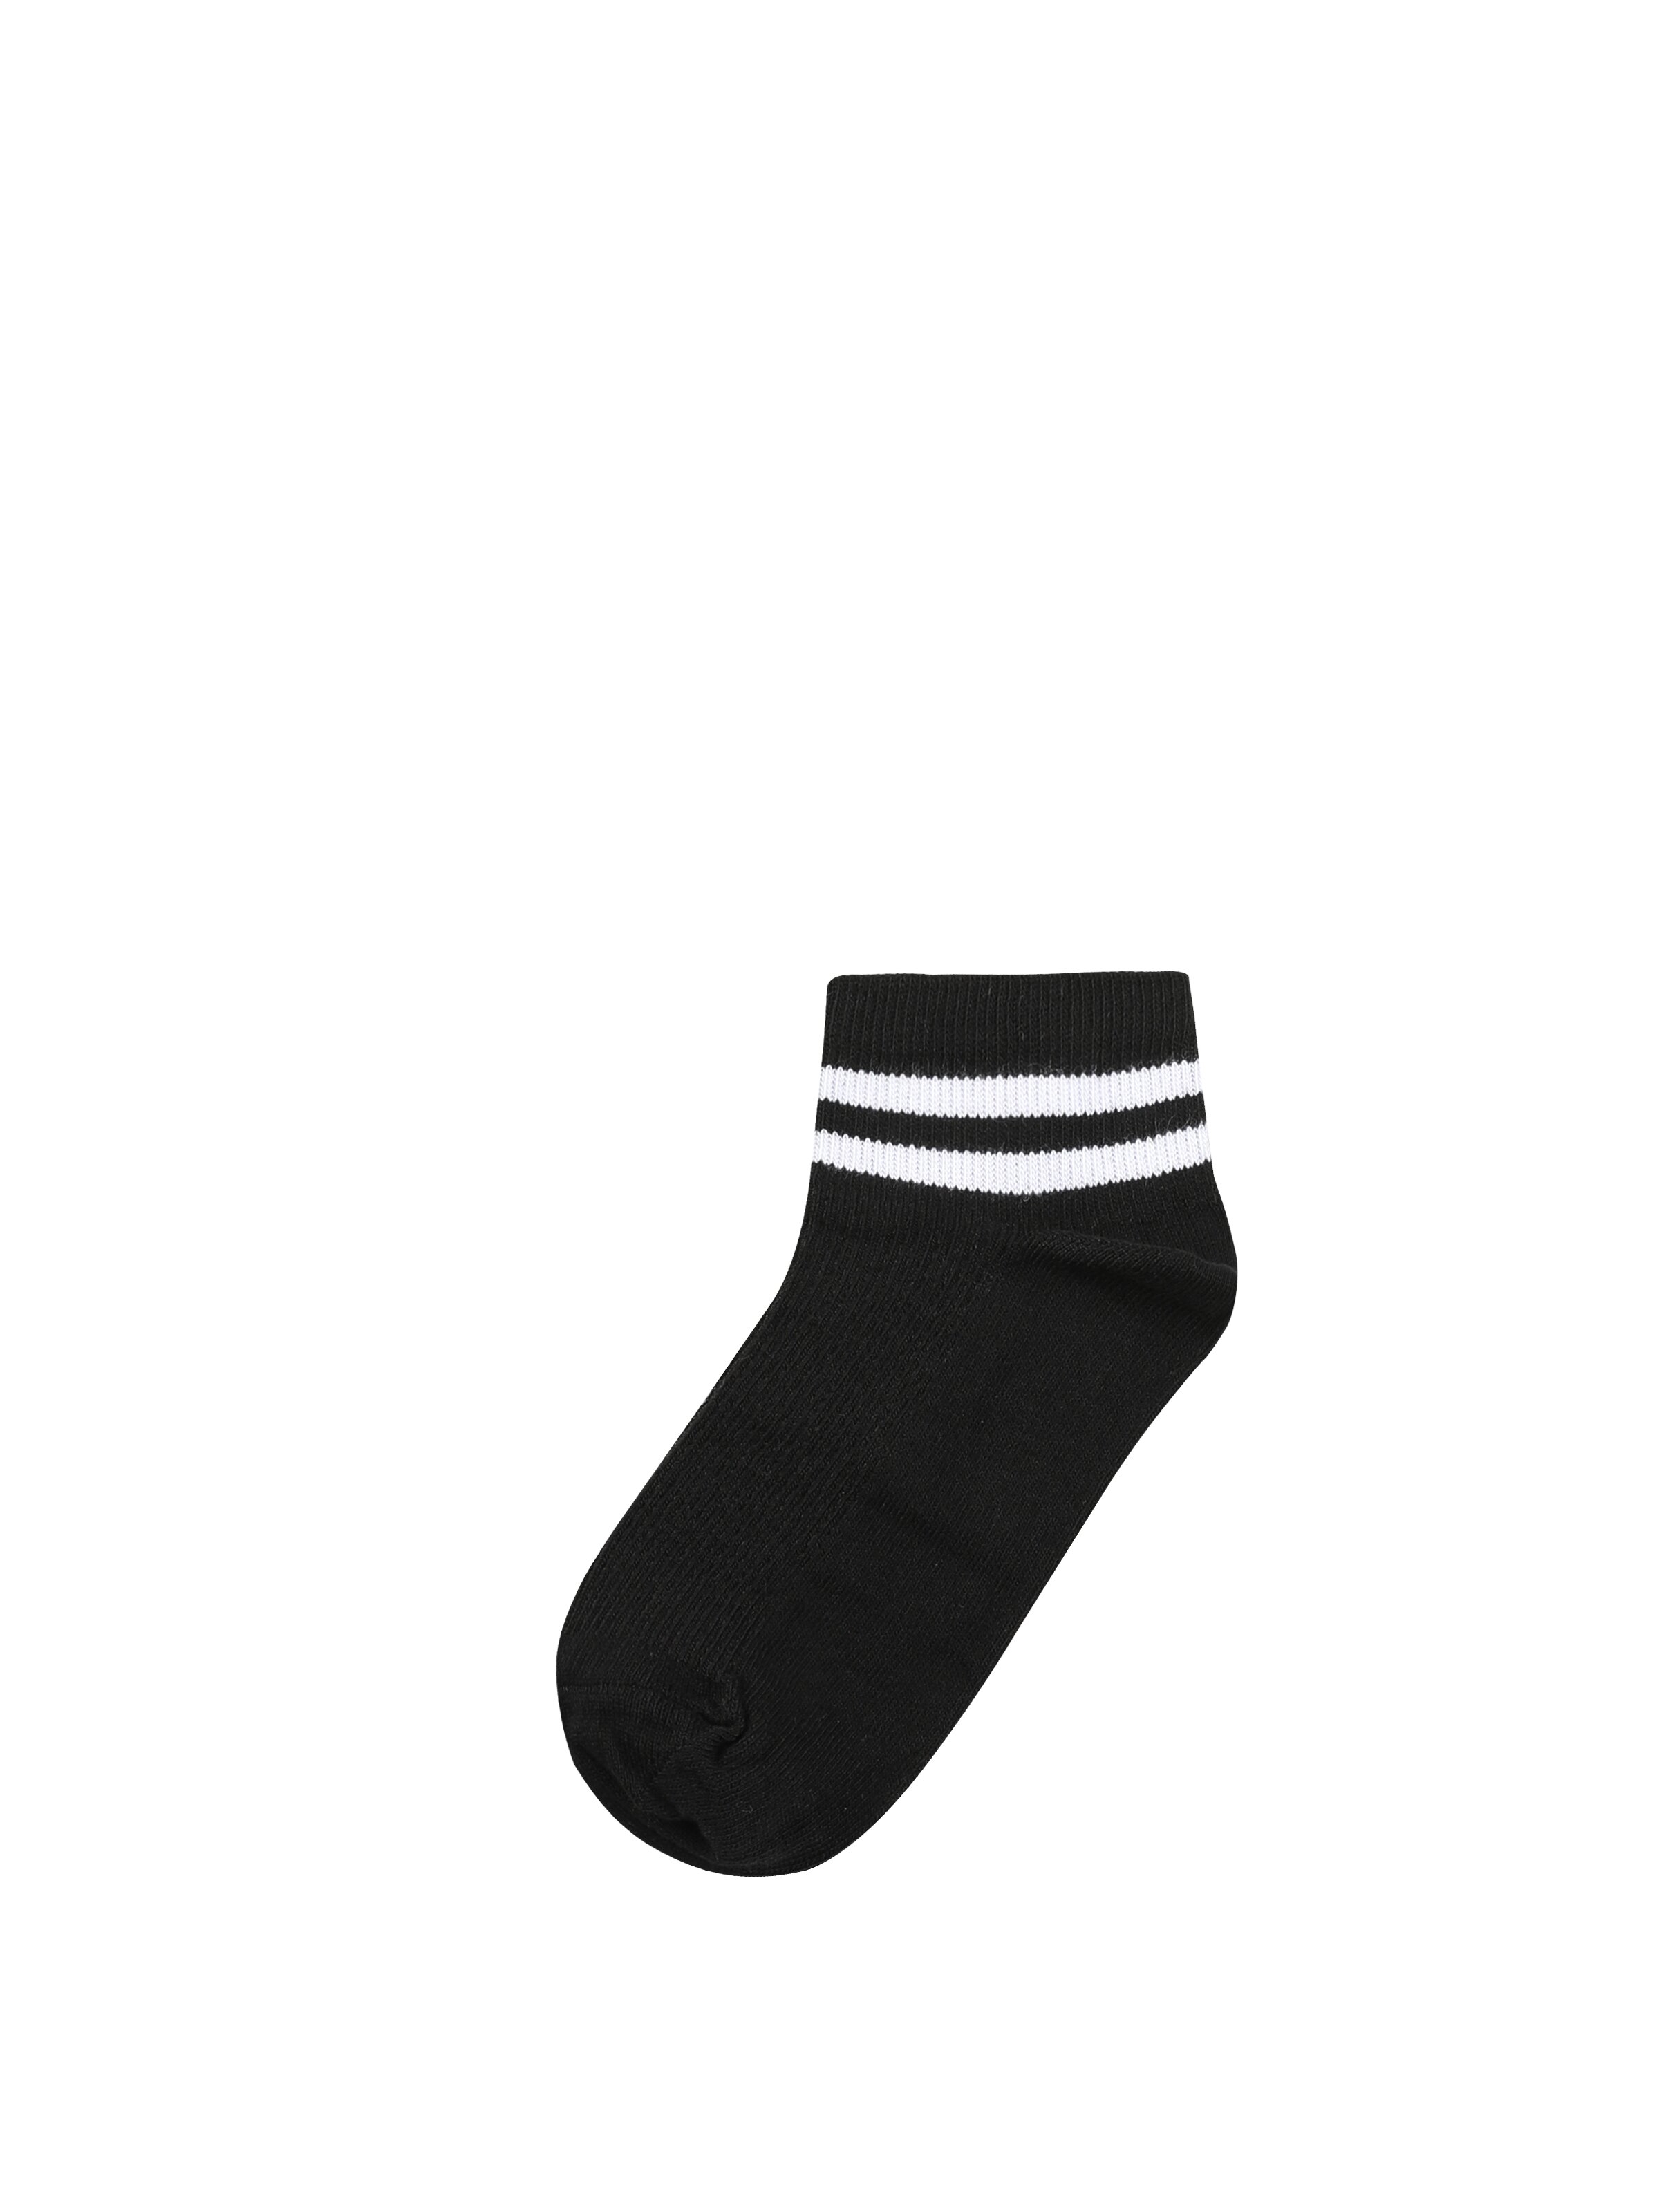 Показати інформацію про Шкарпетки Жіночі Чорні Cl1050634